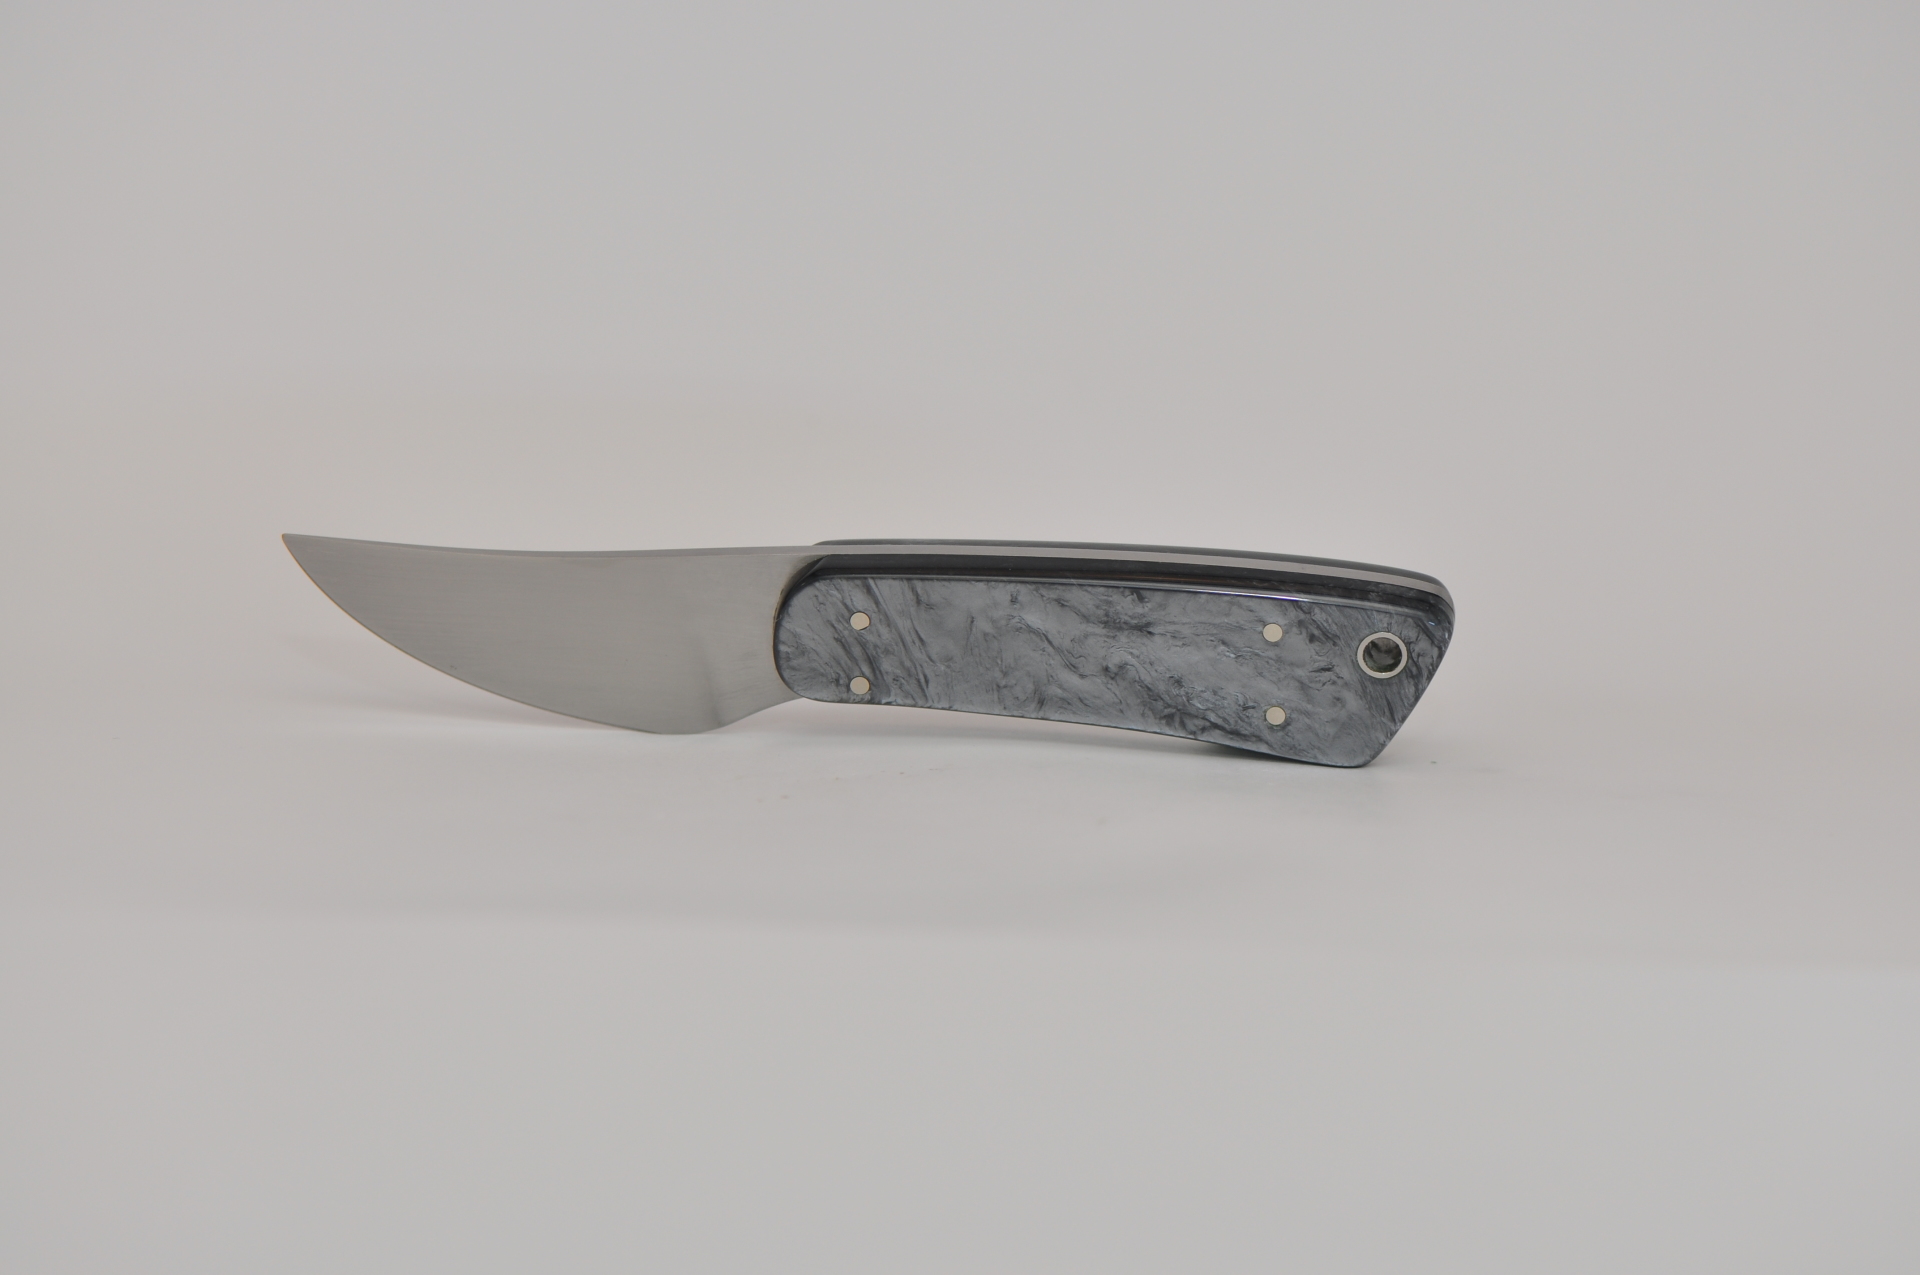 Bill Schrade 4th Generation knife maker 